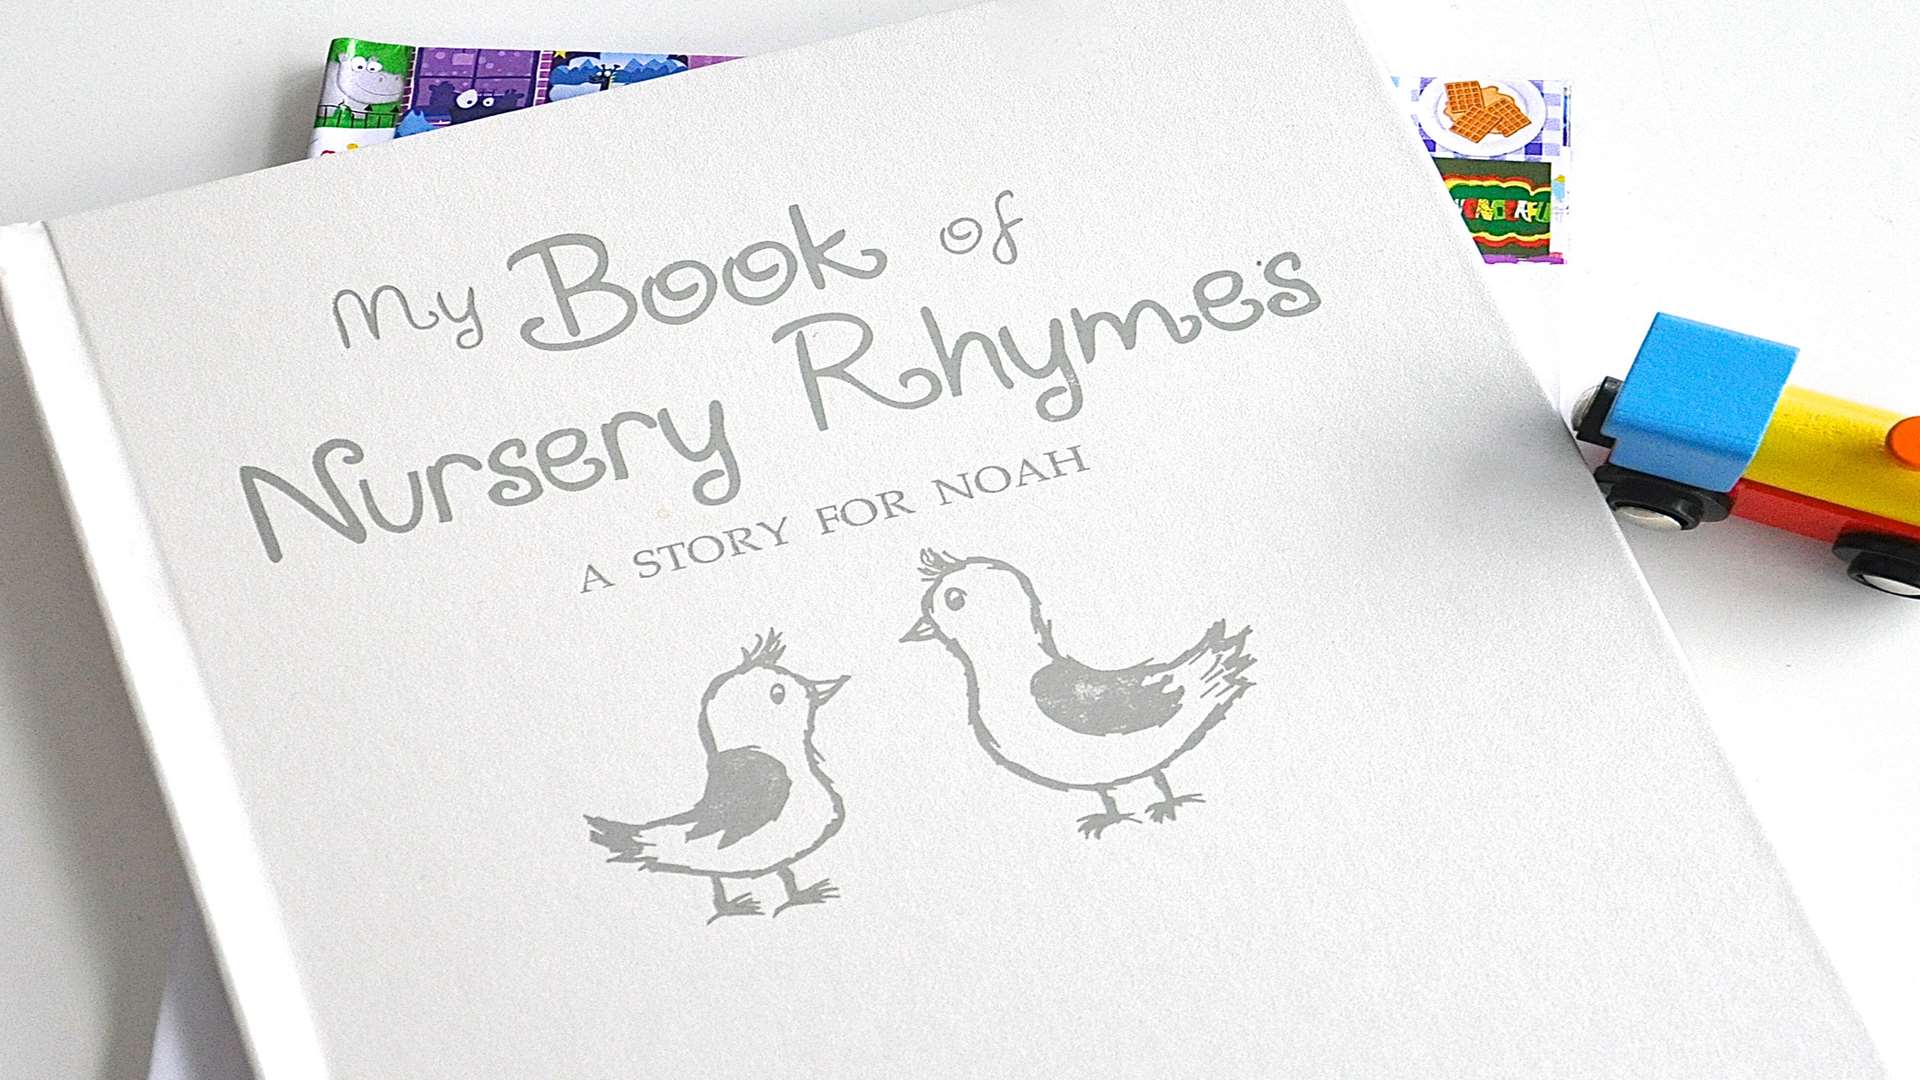 The Personalised Book of Nursery Rhymes